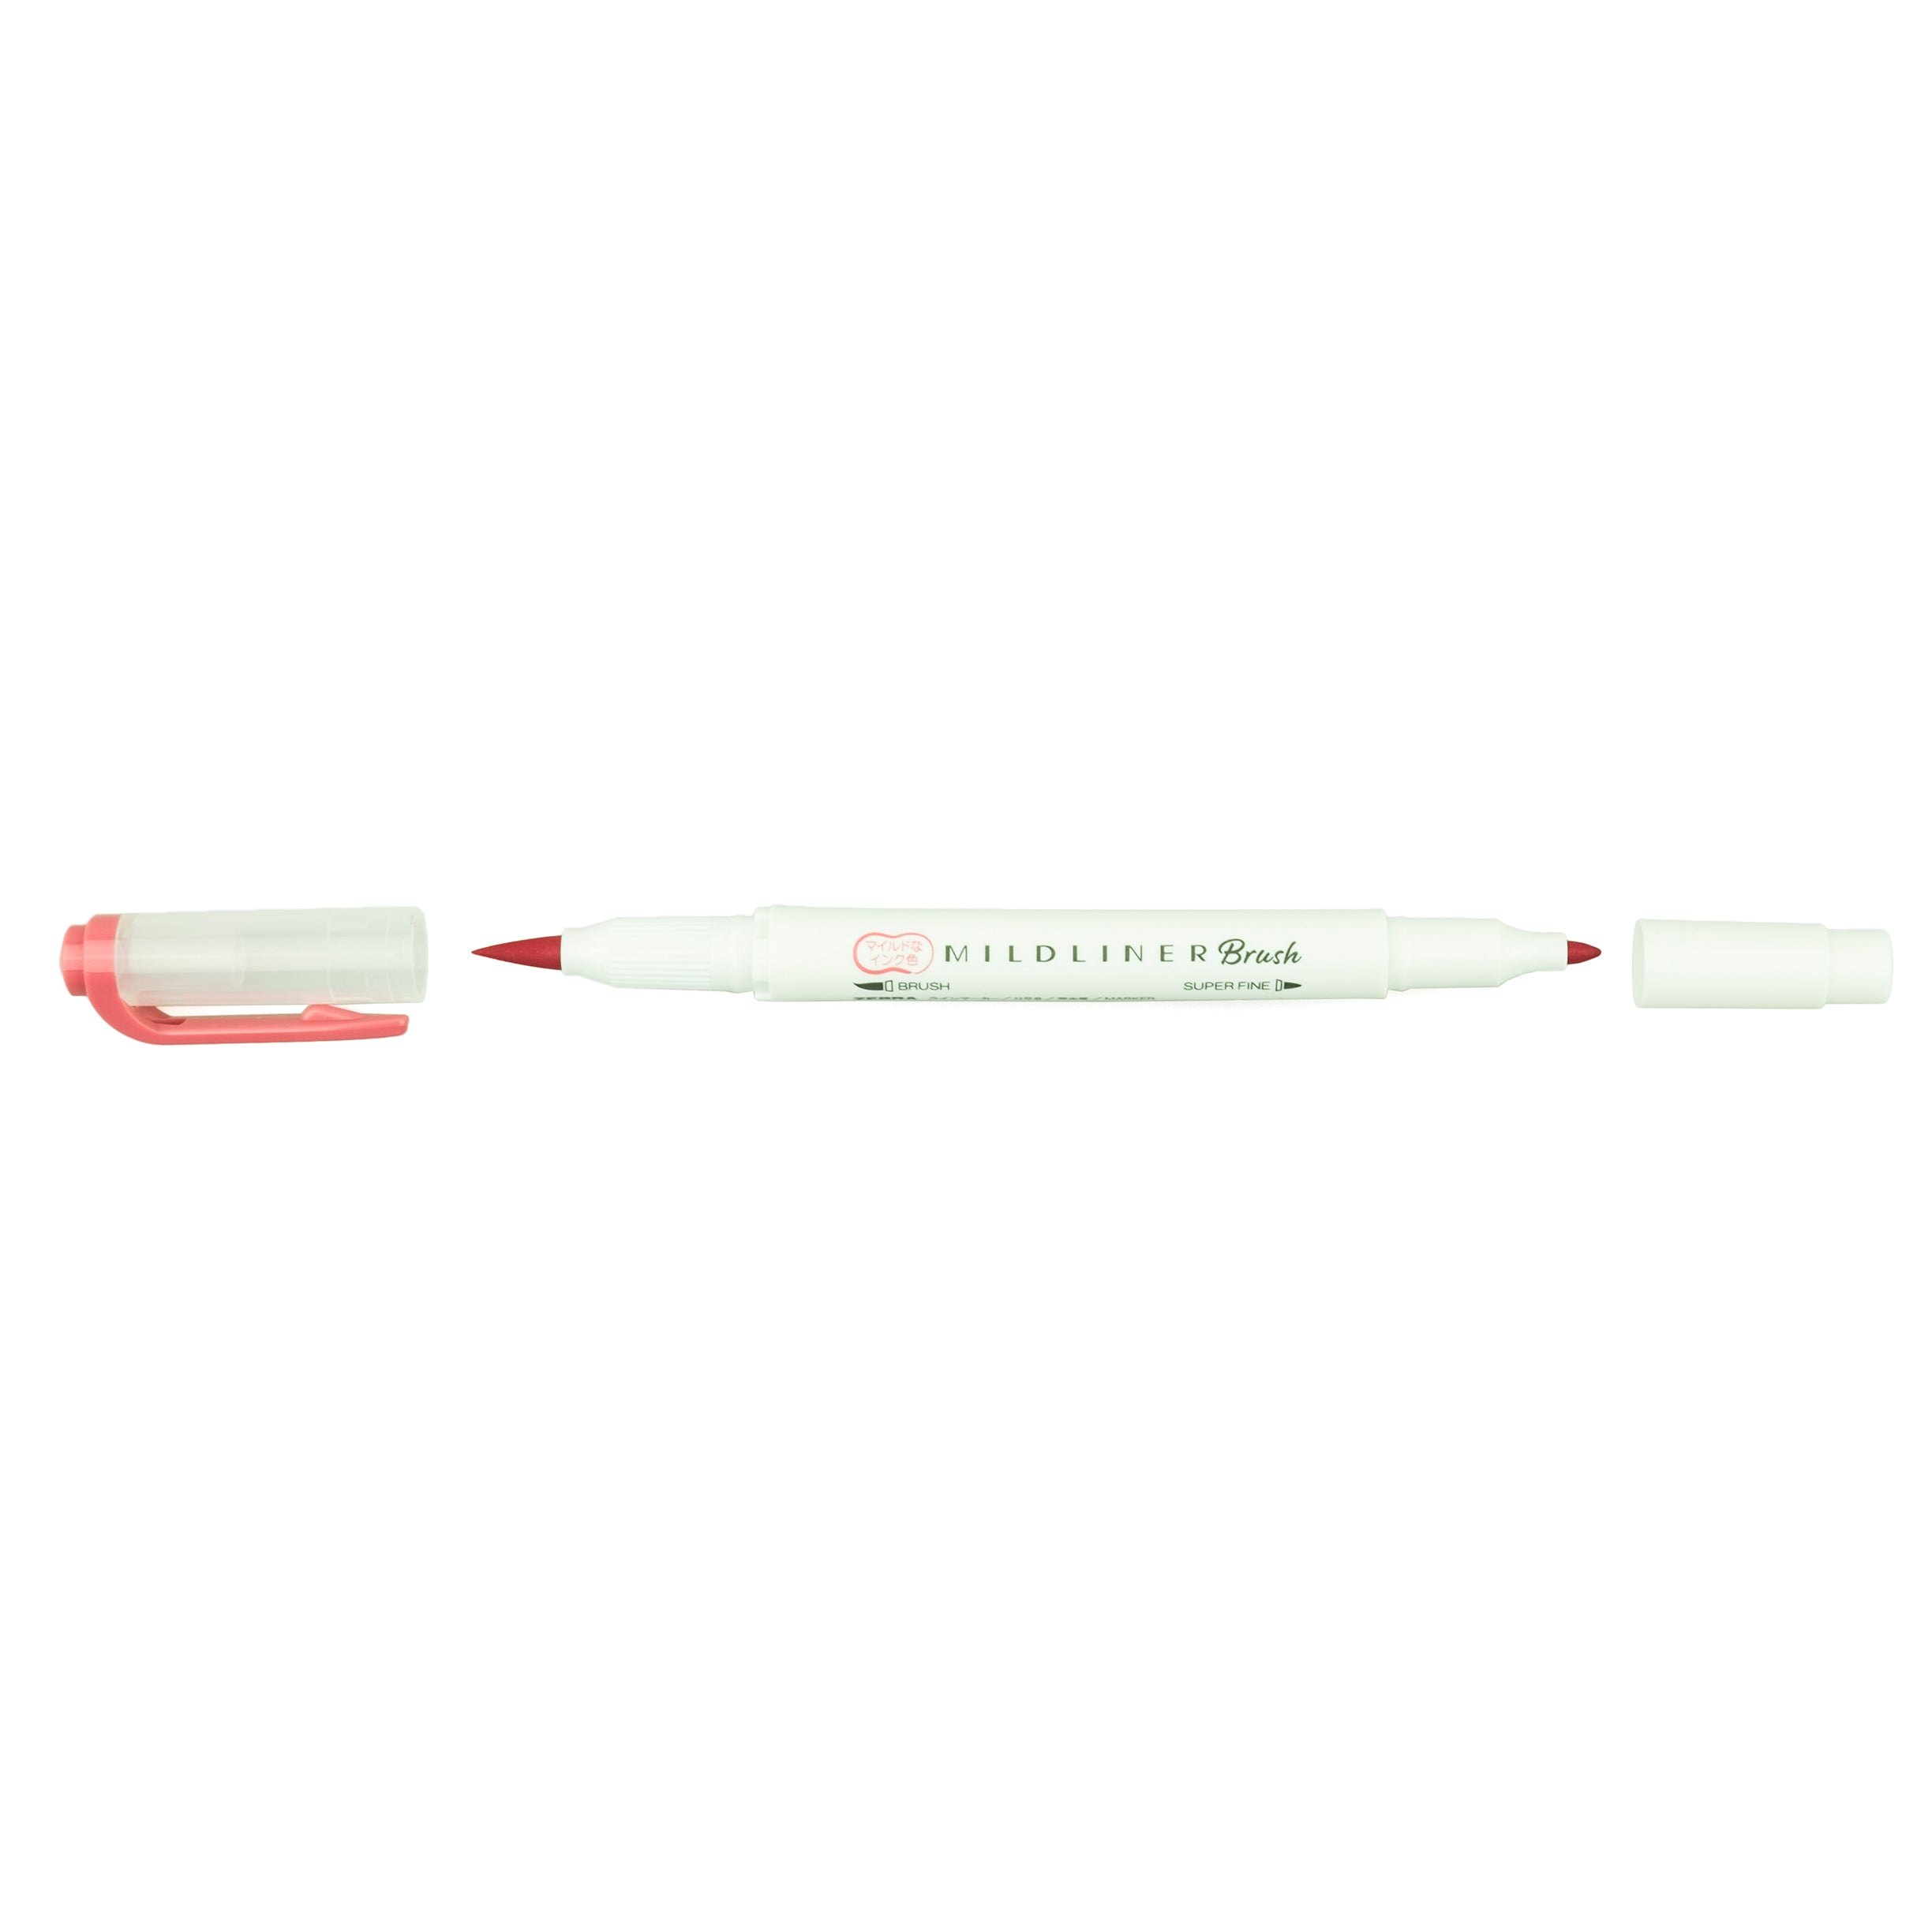 Zebra Mildliner Double-Ended Brush Pen Magenta